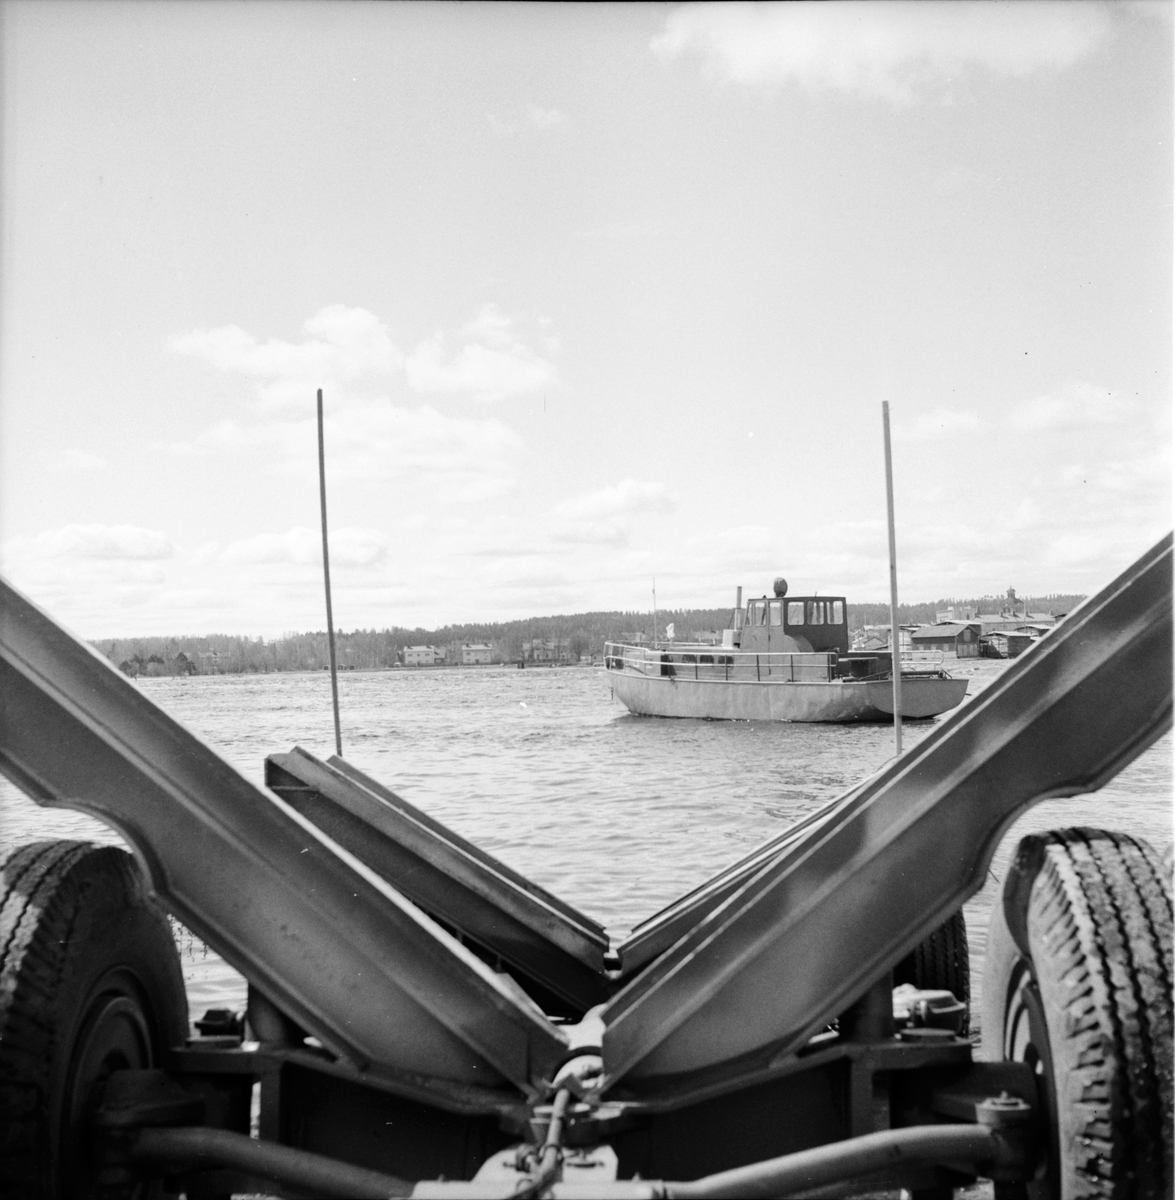 Bollnäs,
Flottarbåten "Varpnäs" väntar på att tas upp ur varpen,
Maj 1969